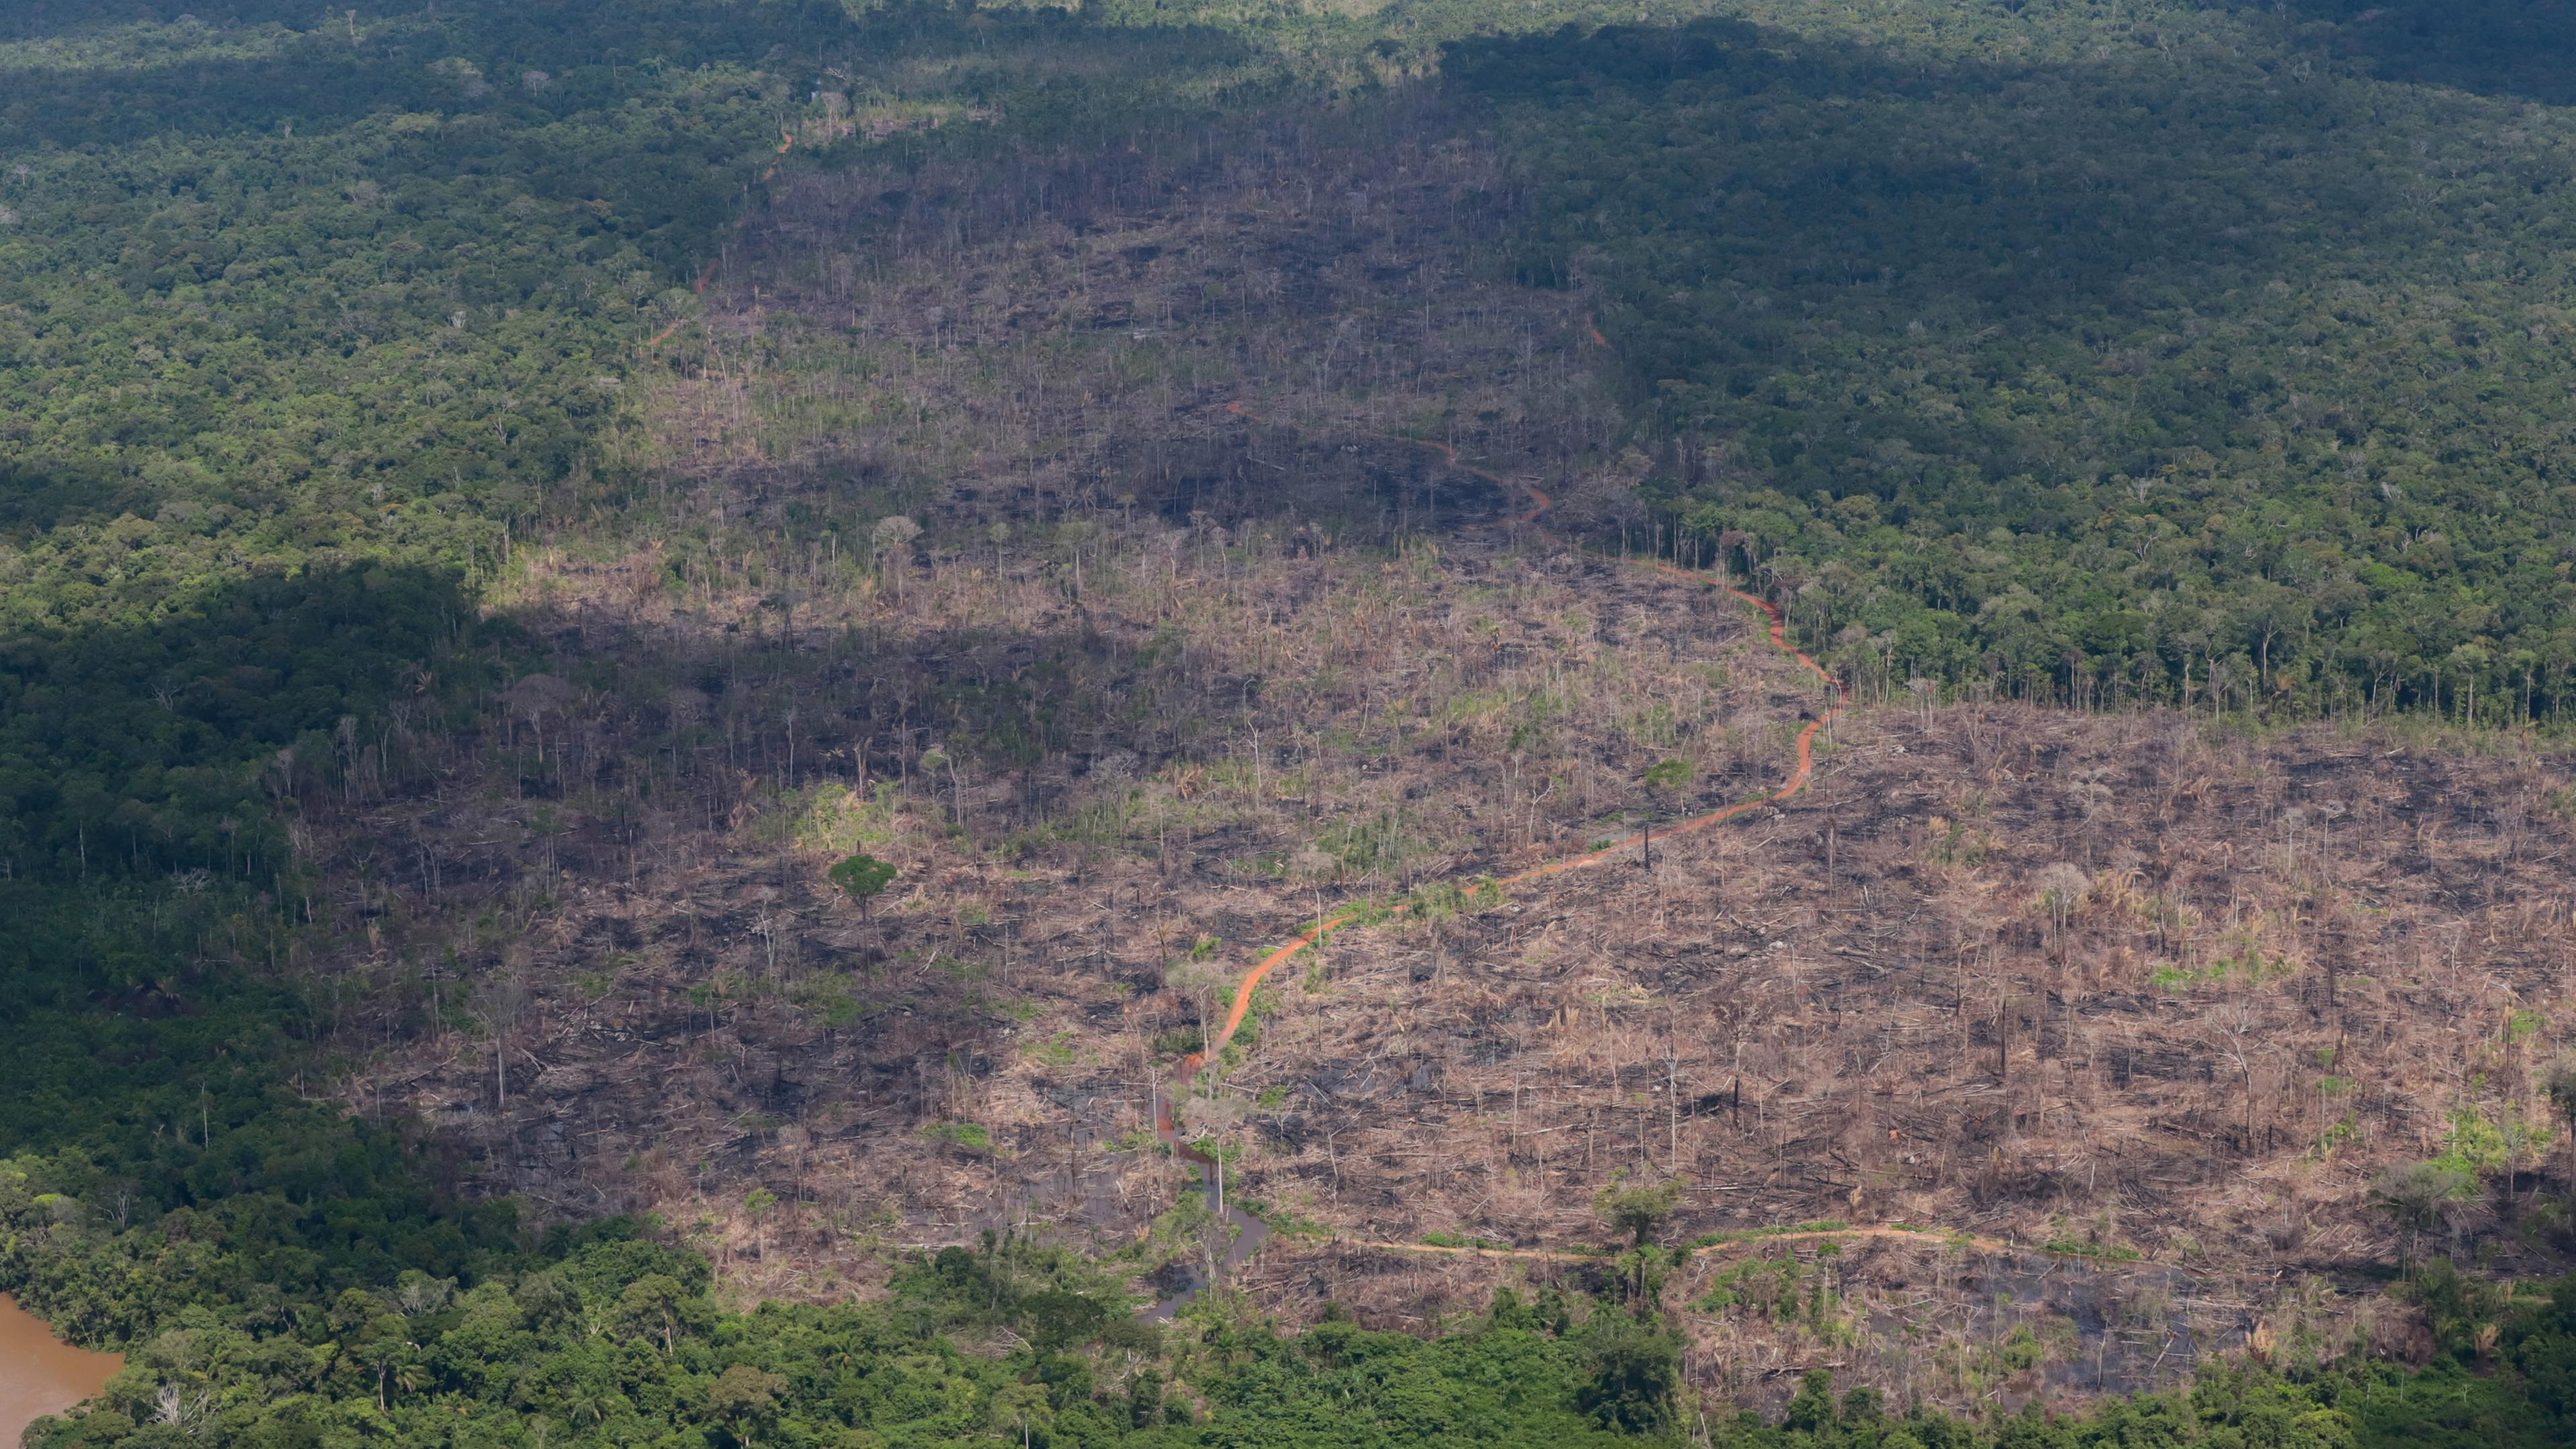 Luftblick auf eine abgeholzte Fläche des Regenwalds im Amazonasgebiet in Brasilien. (Archivbild)